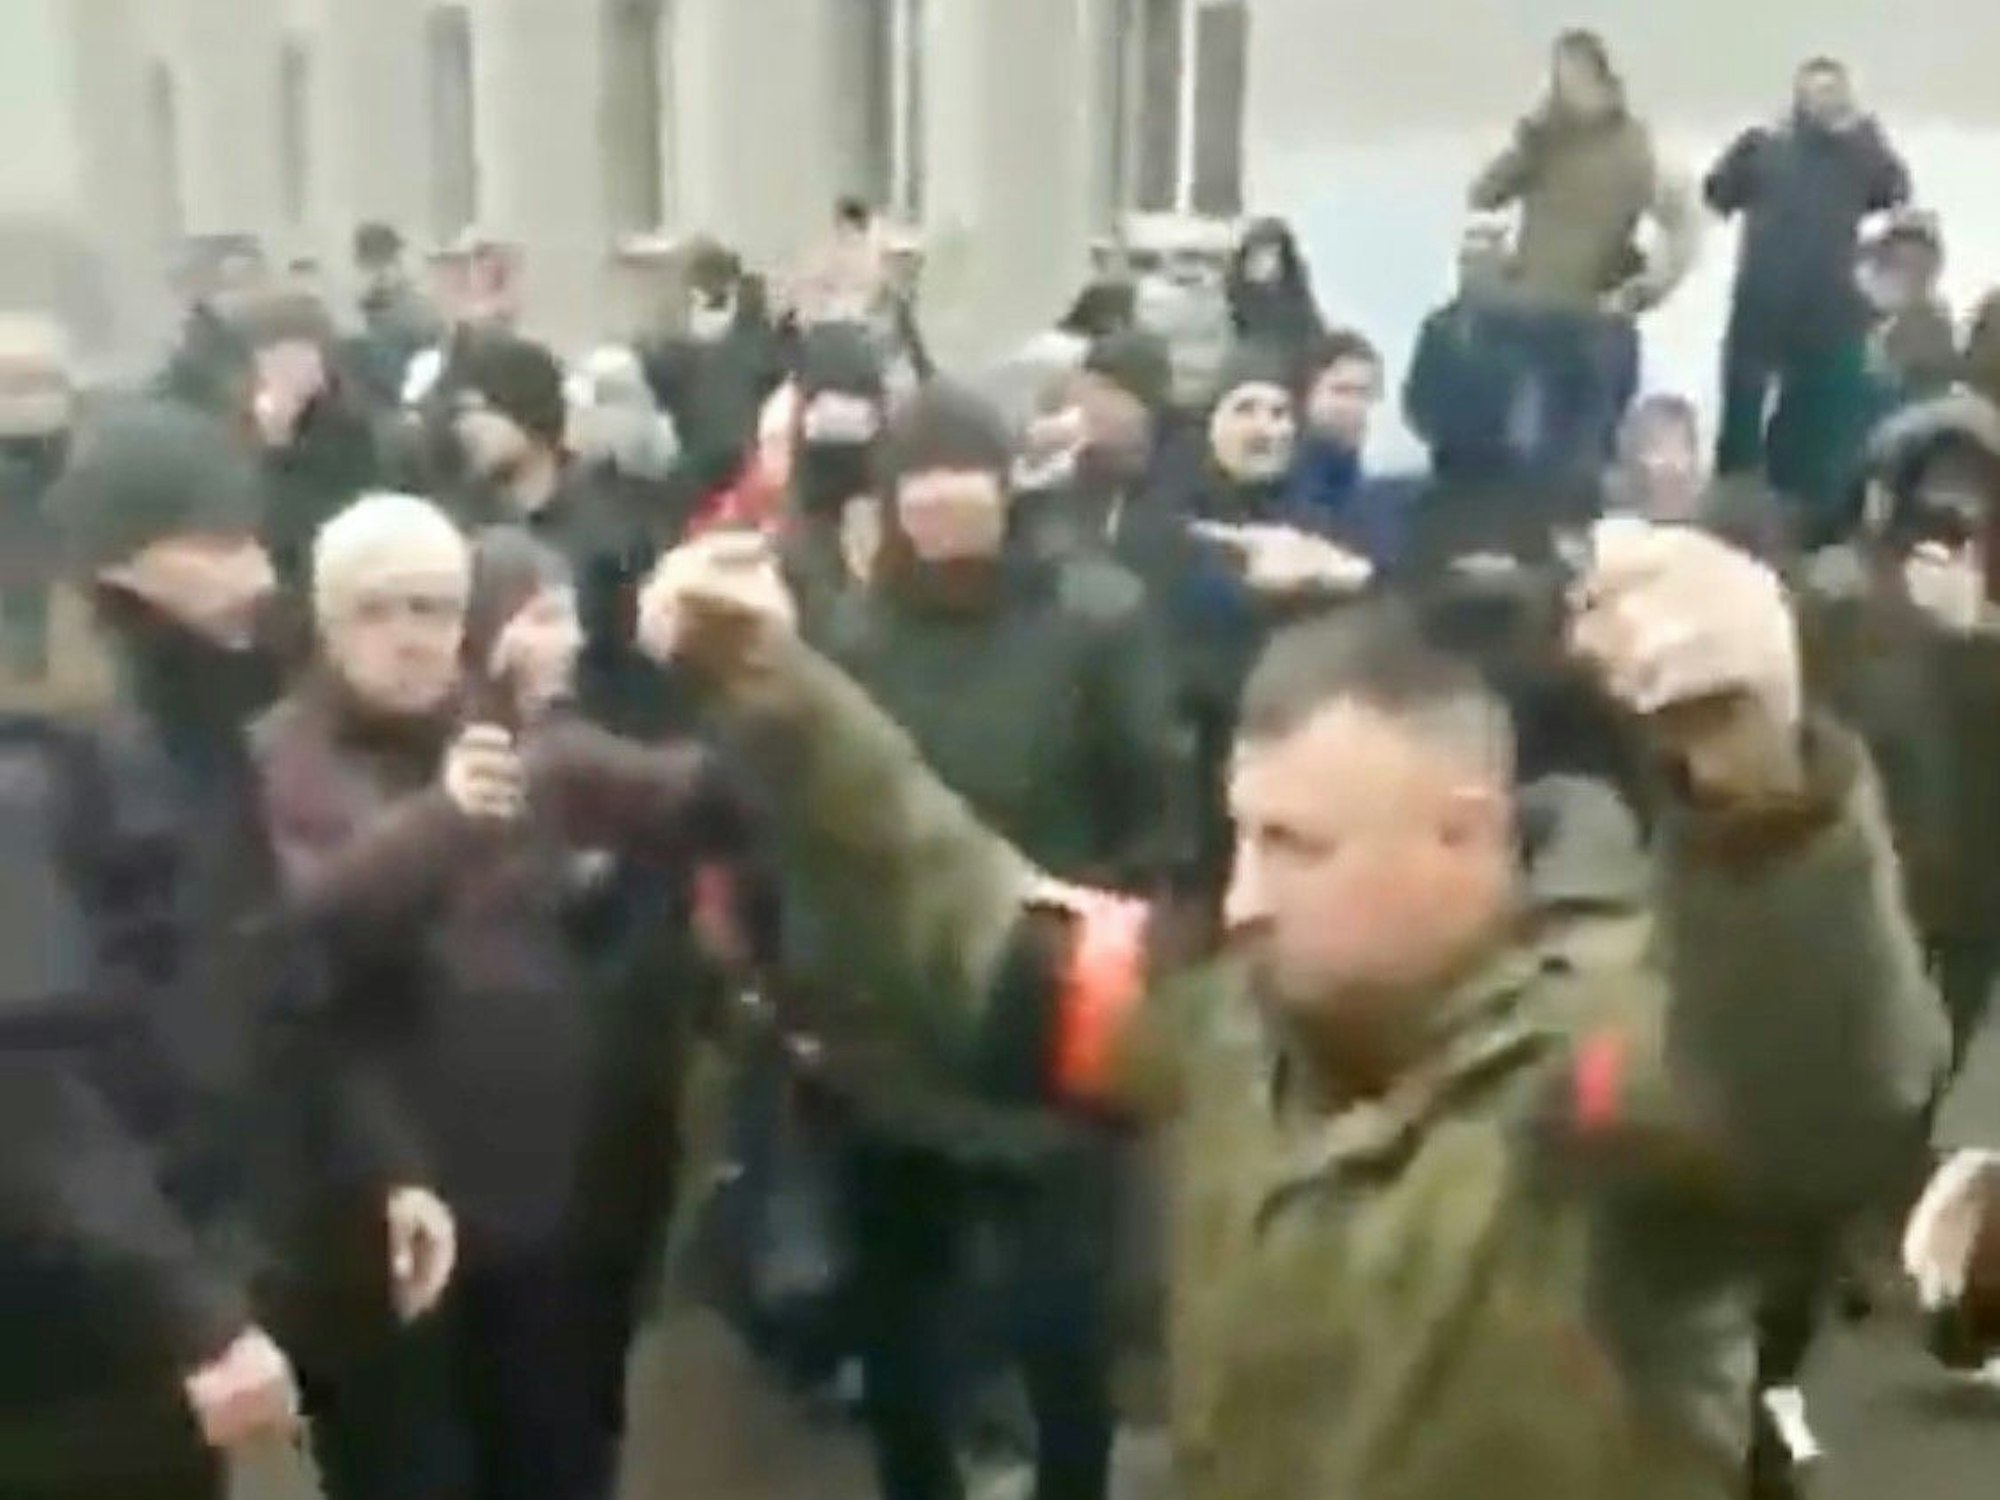 Der Ausschnitt des Twitter-Videos zeigt eine russische Delegation in Konotop (Oblast Sumy), die dem Stadtrat ihre Kapitulationsbedingungen diktierten. Sie verließen anschließend die Verhandlungen mit erhobenen Händen, wurden von den Menschen mit „Schande“ beschimpft.